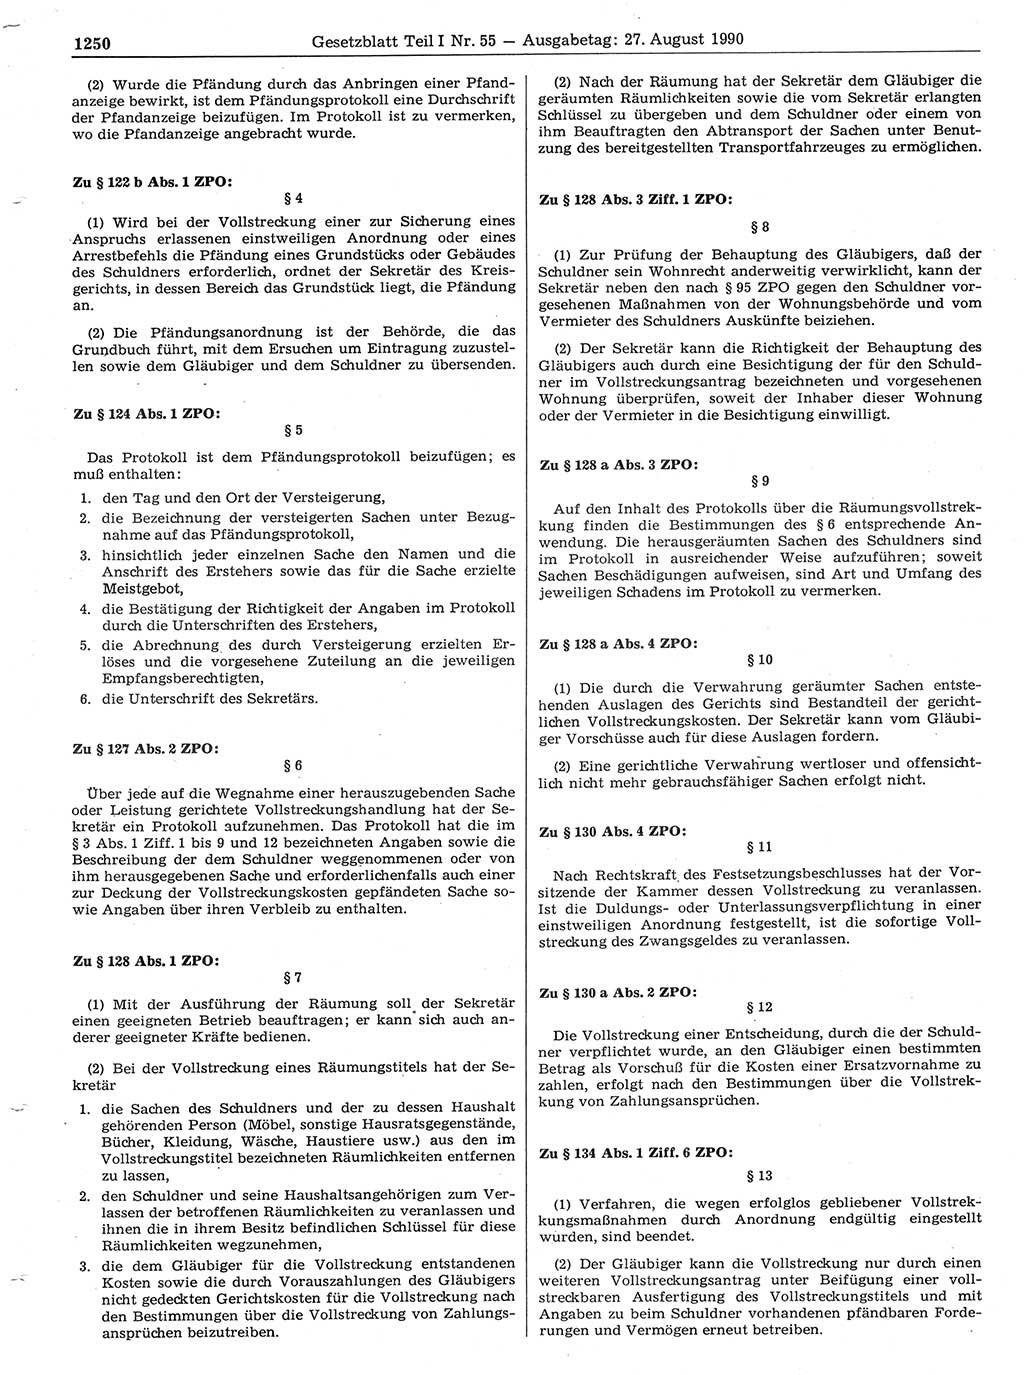 Gesetzblatt (GBl.) der Deutschen Demokratischen Republik (DDR) Teil Ⅰ 1990, Seite 1250 (GBl. DDR Ⅰ 1990, S. 1250)